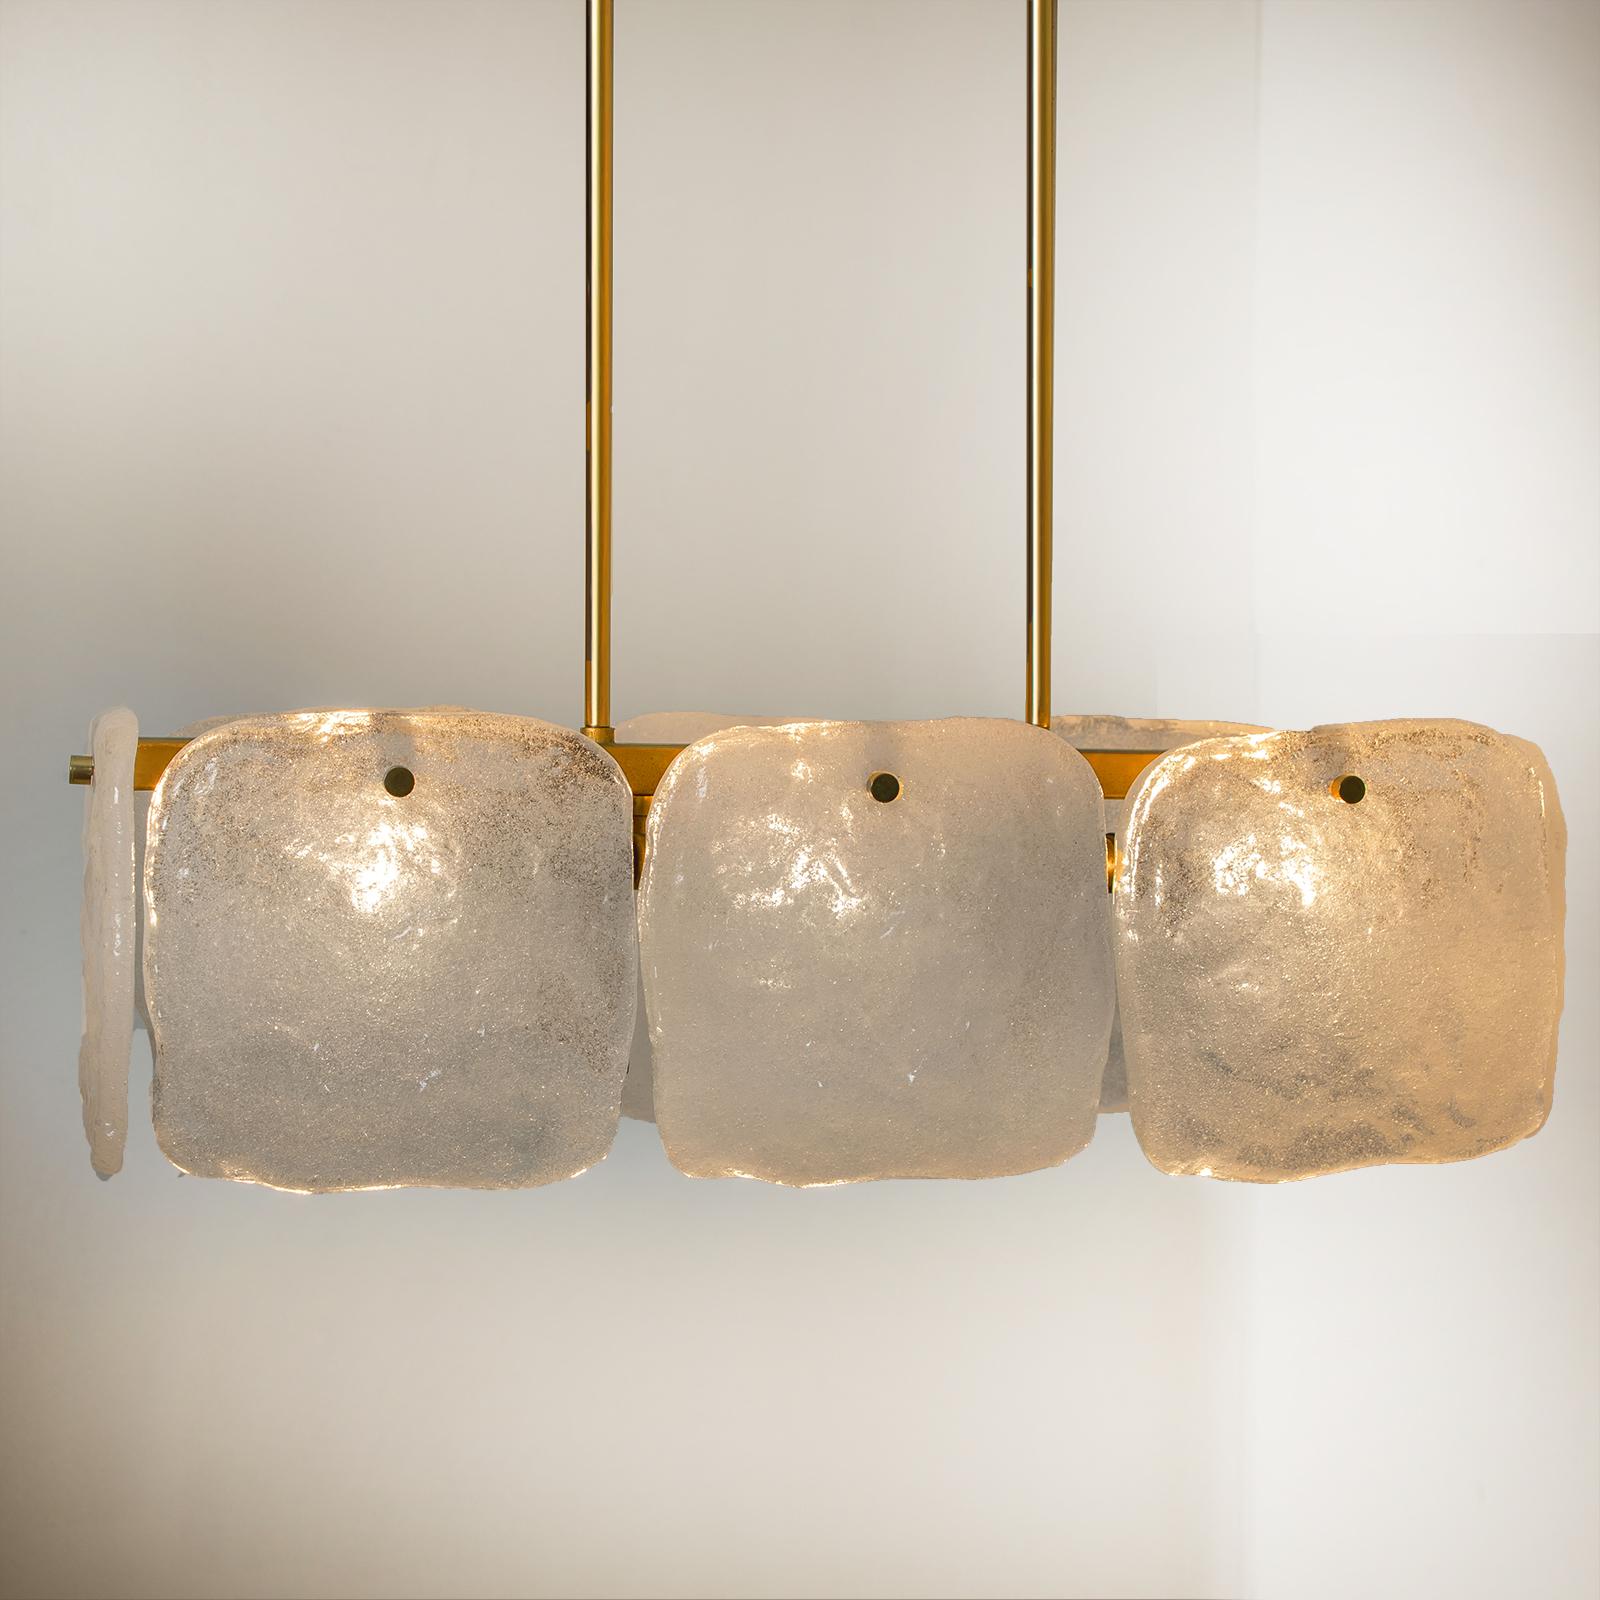 Une suspension en verre de glace conçue par J.T Kalmar, fabriquée par Kalmar Franken, en Autriche, dans les années 1960.
Design haut de gamme et artisanal du 20e siècle. Le pendentif/chandelier comporte huit grands carrés d'abat-jour en verre